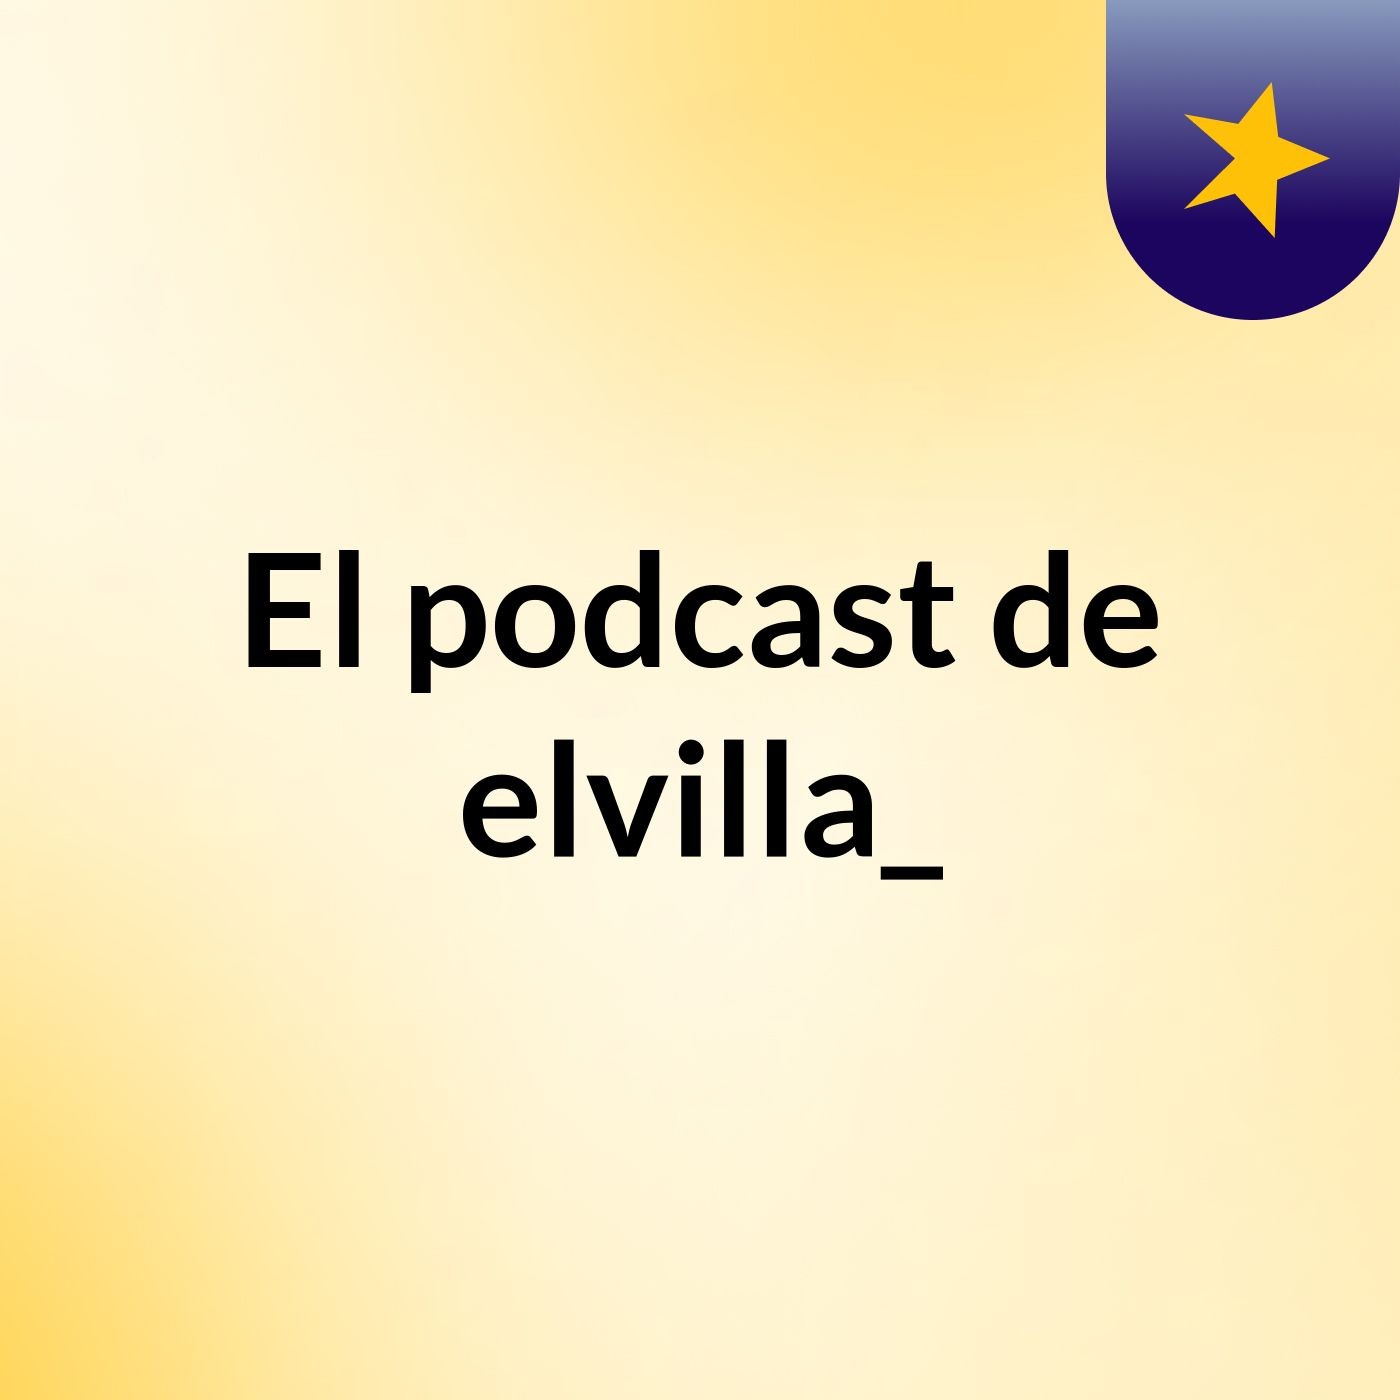 Episodio 4 - El podcast de elvilla_